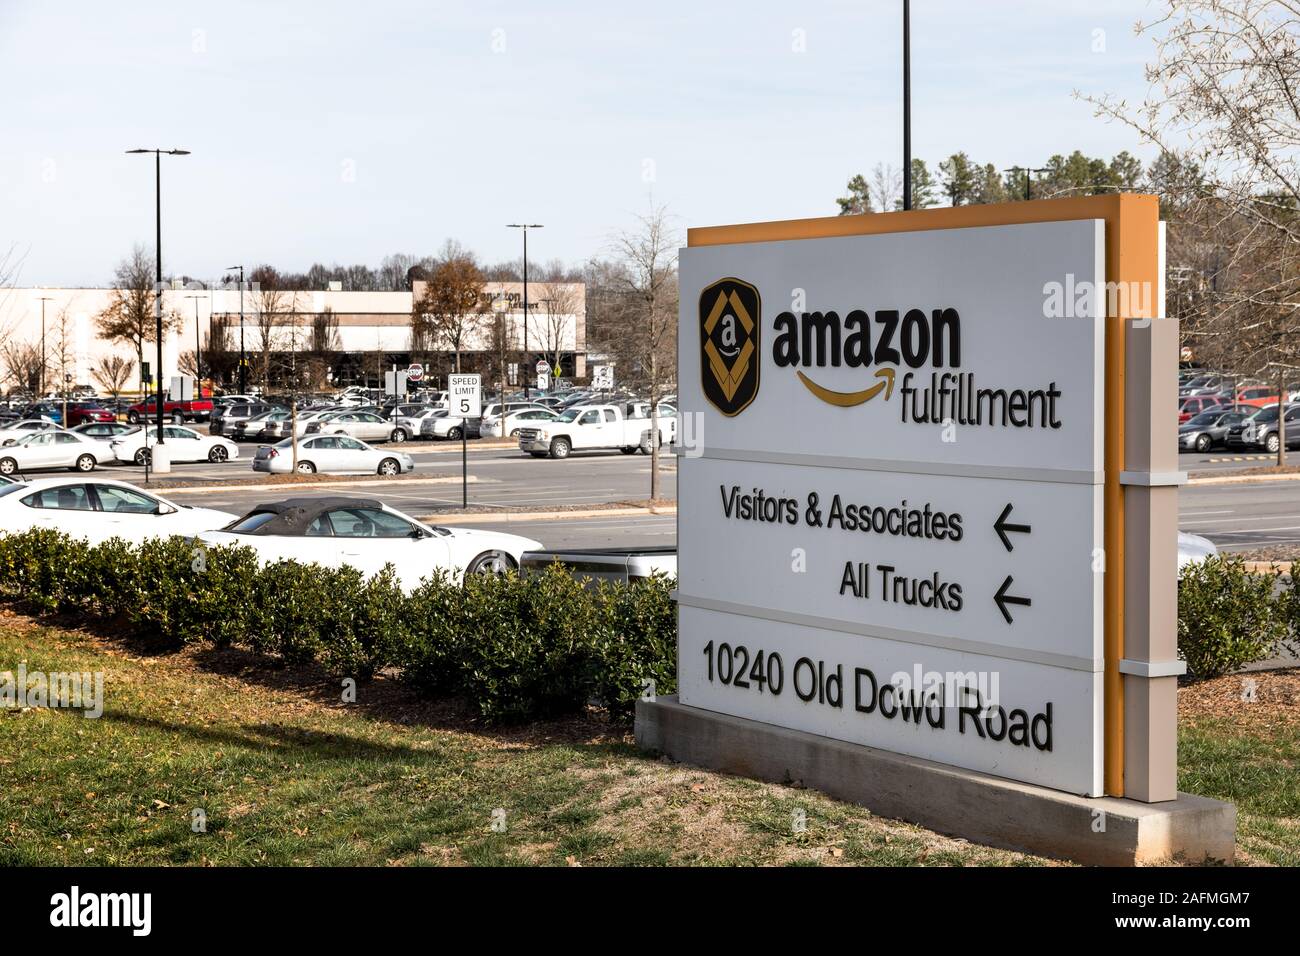 CHARLOTTE, NC, USA-8 Dezember 2019: Ein Amazon Fulfillment Center und Straßenschild auf Wilkinson Blvd., mit Parkplatz voller Mitarbeiter Fahrzeuge. Stockfoto